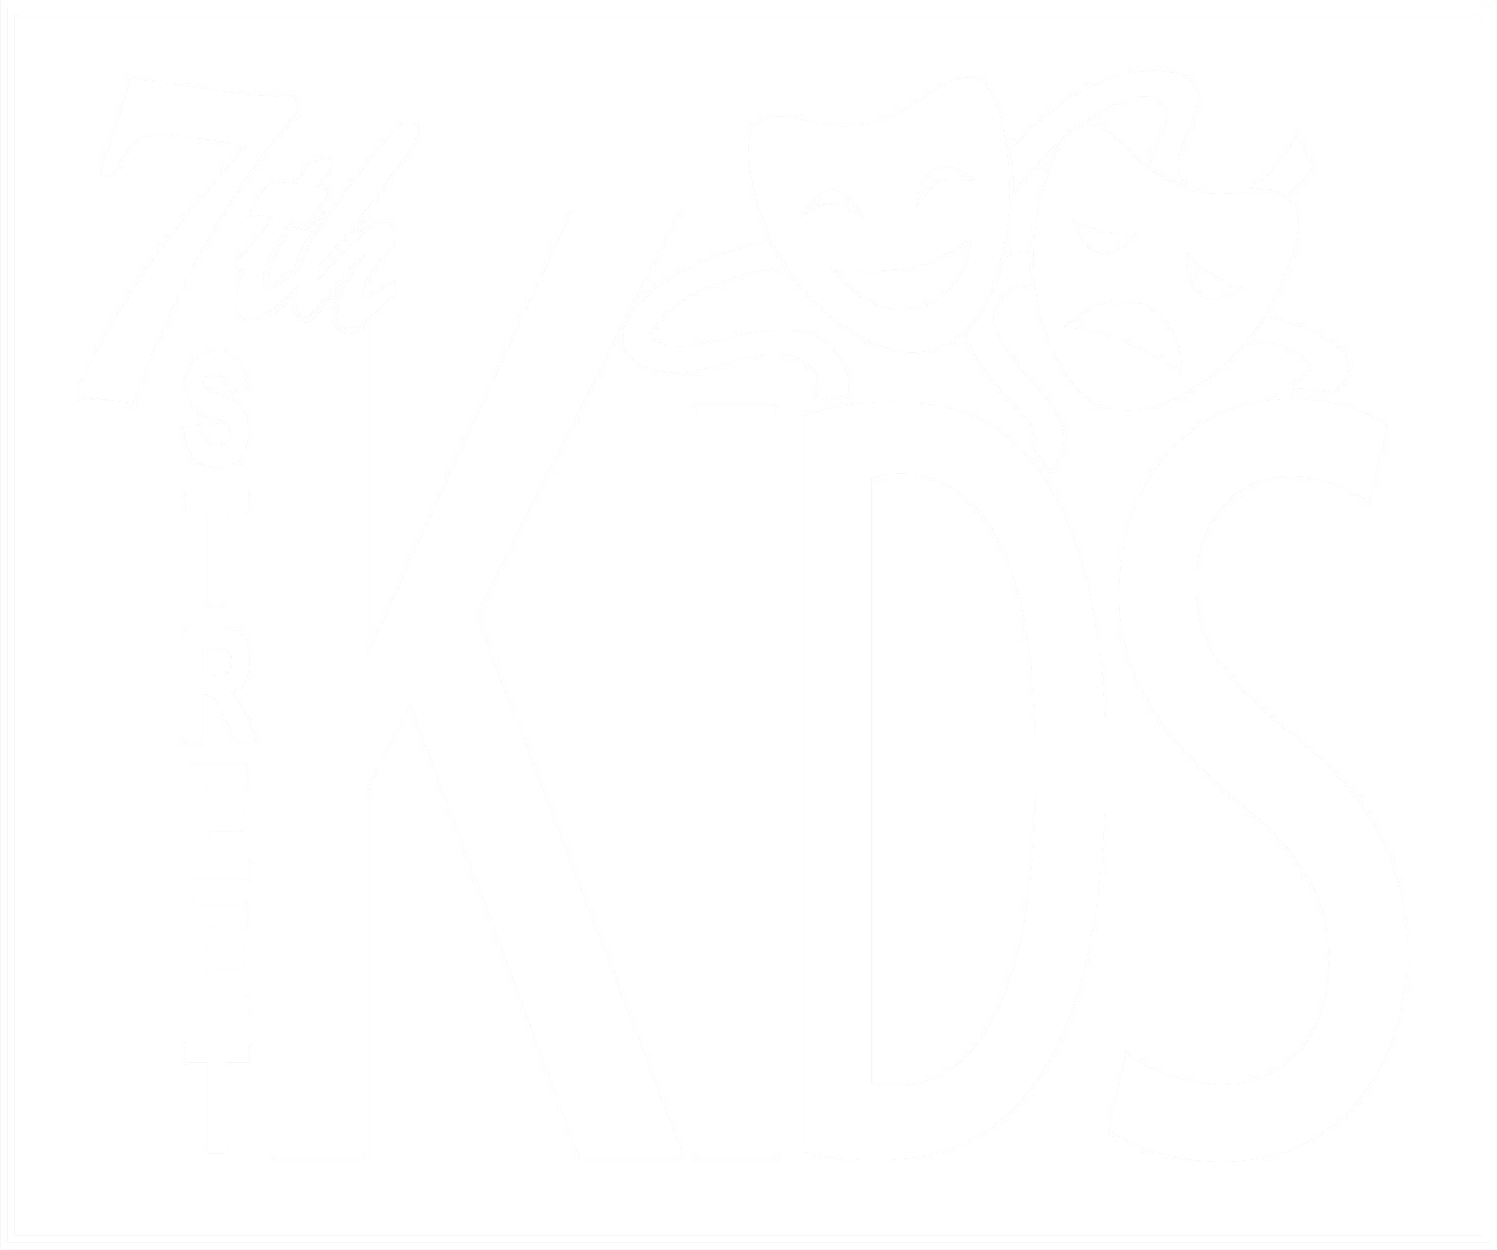 7th Street Kids